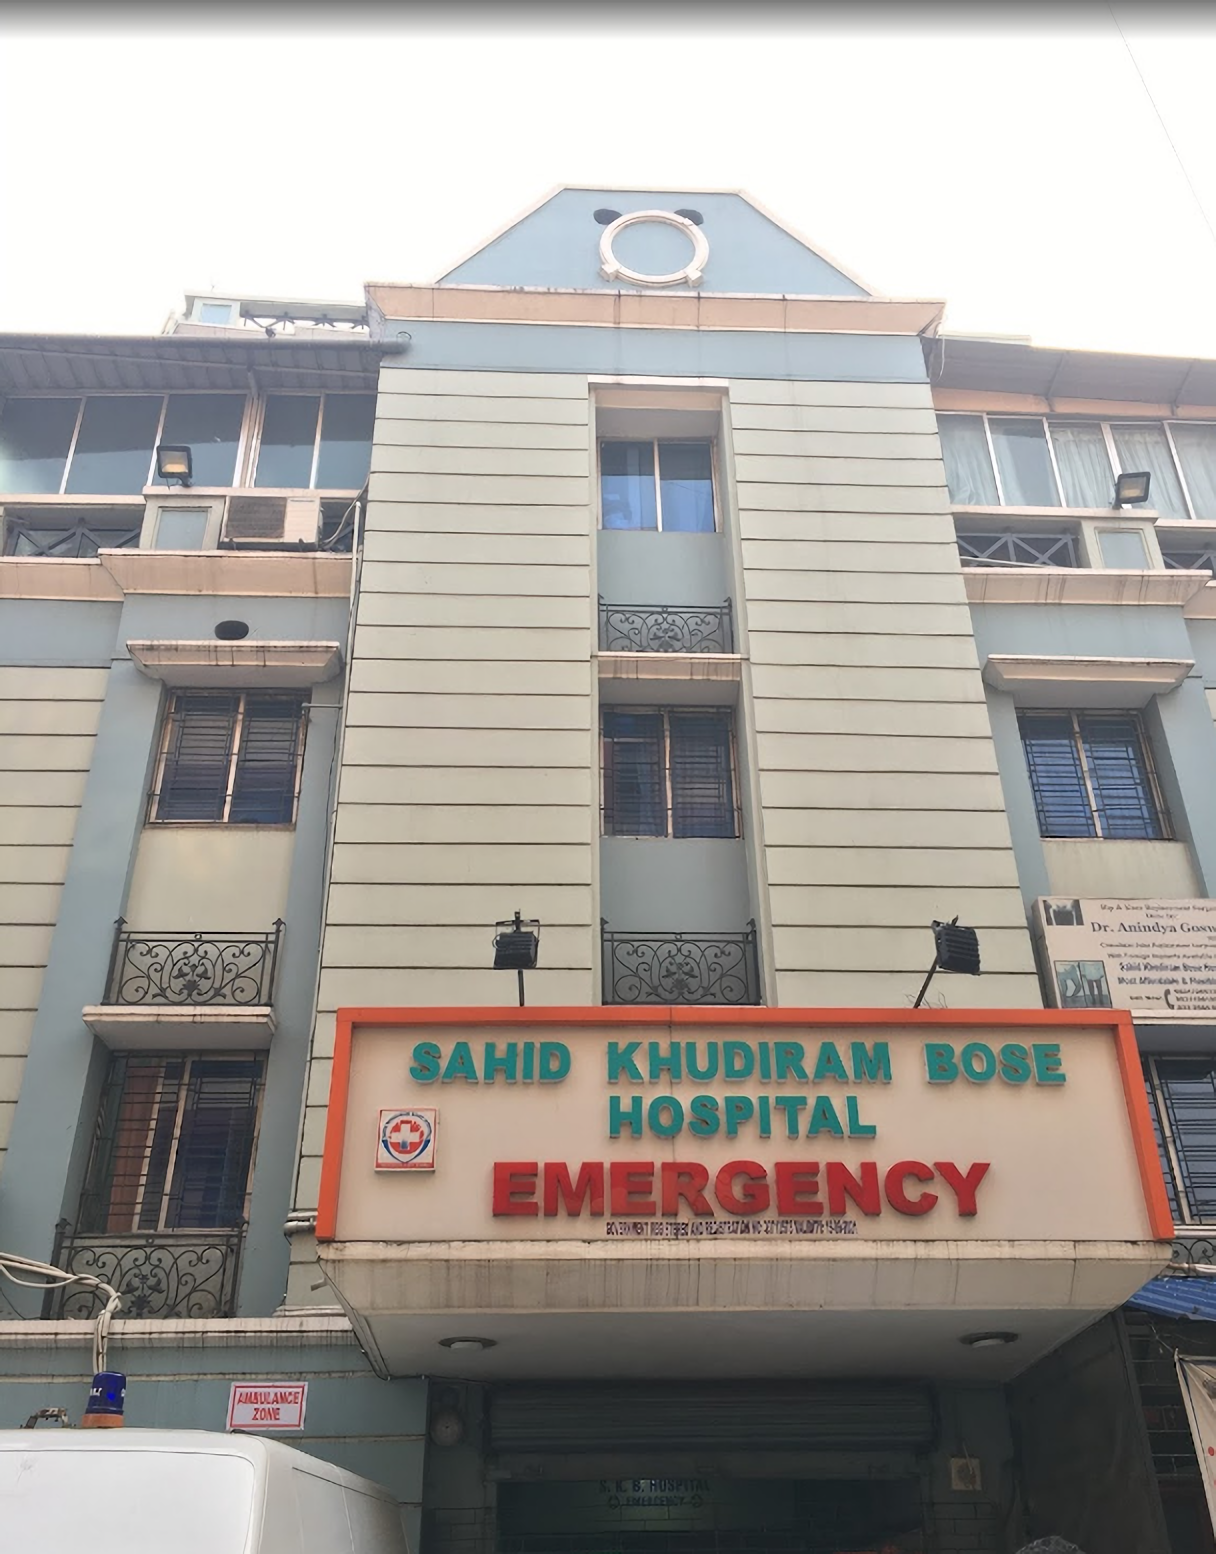 Sahid Khudiram Bose Hospital